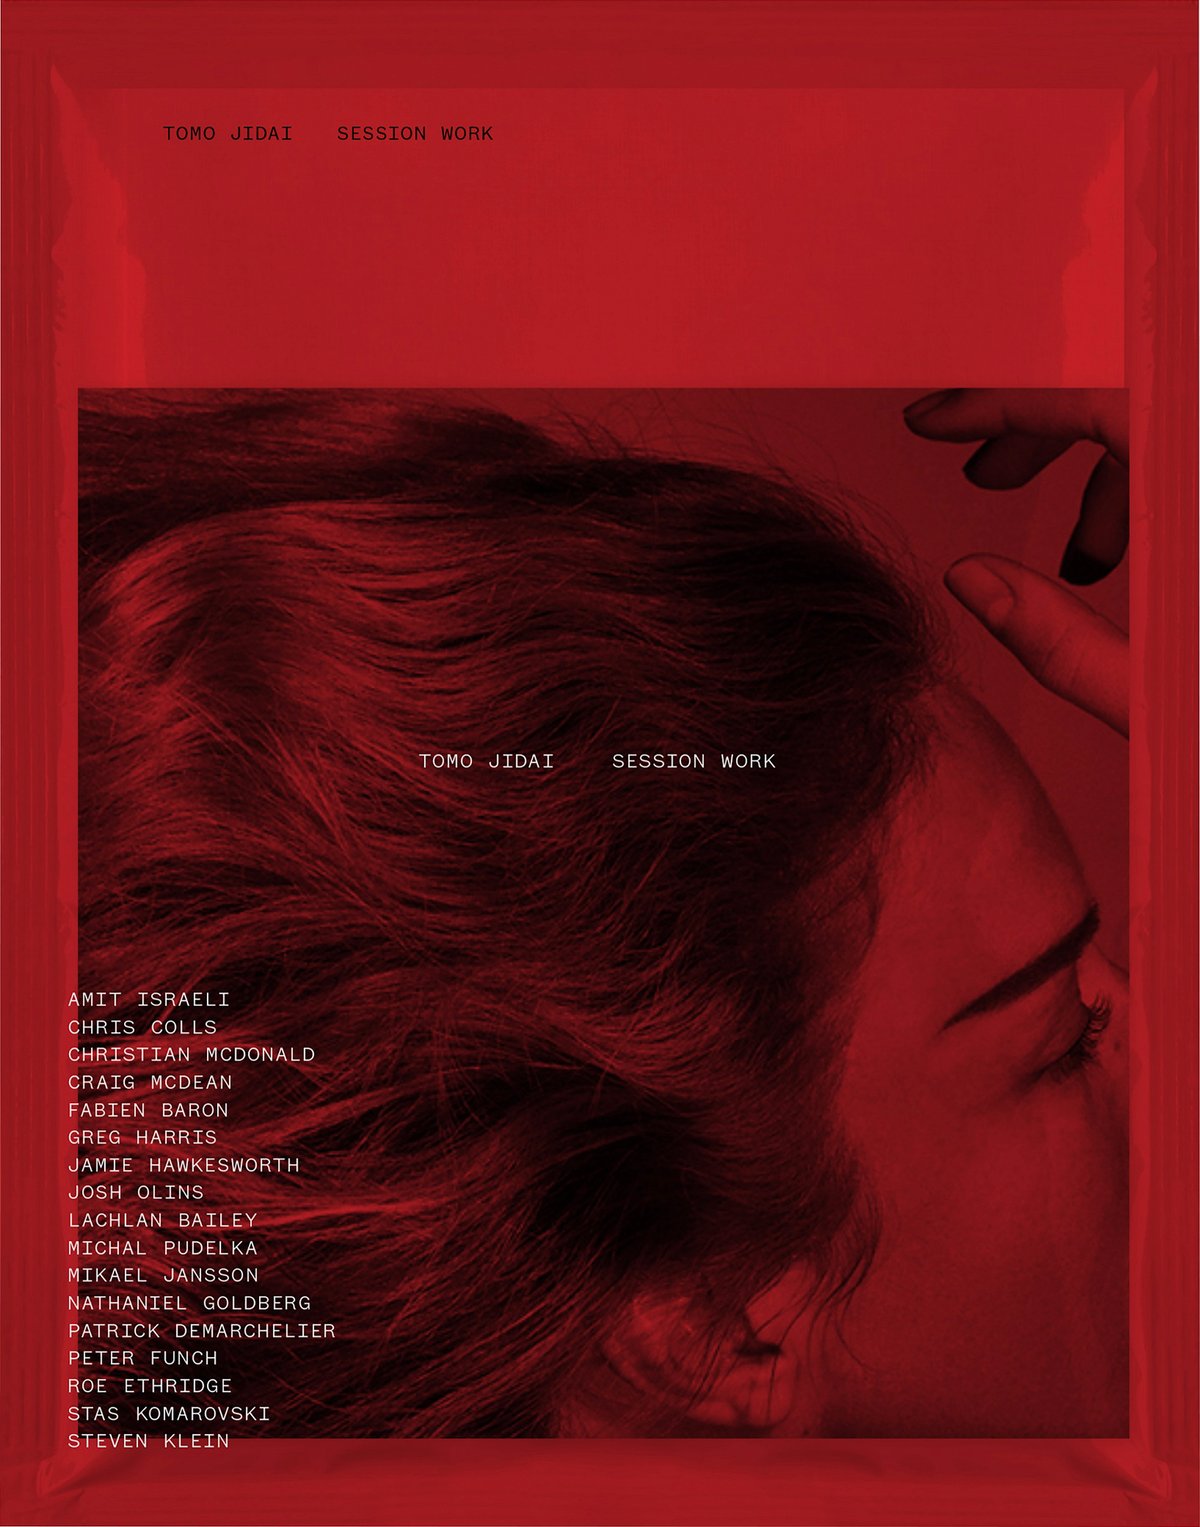 ヘアスタイリストTOMO JIDAIによる作品をまとめた写真集の赤を基調とした表紙